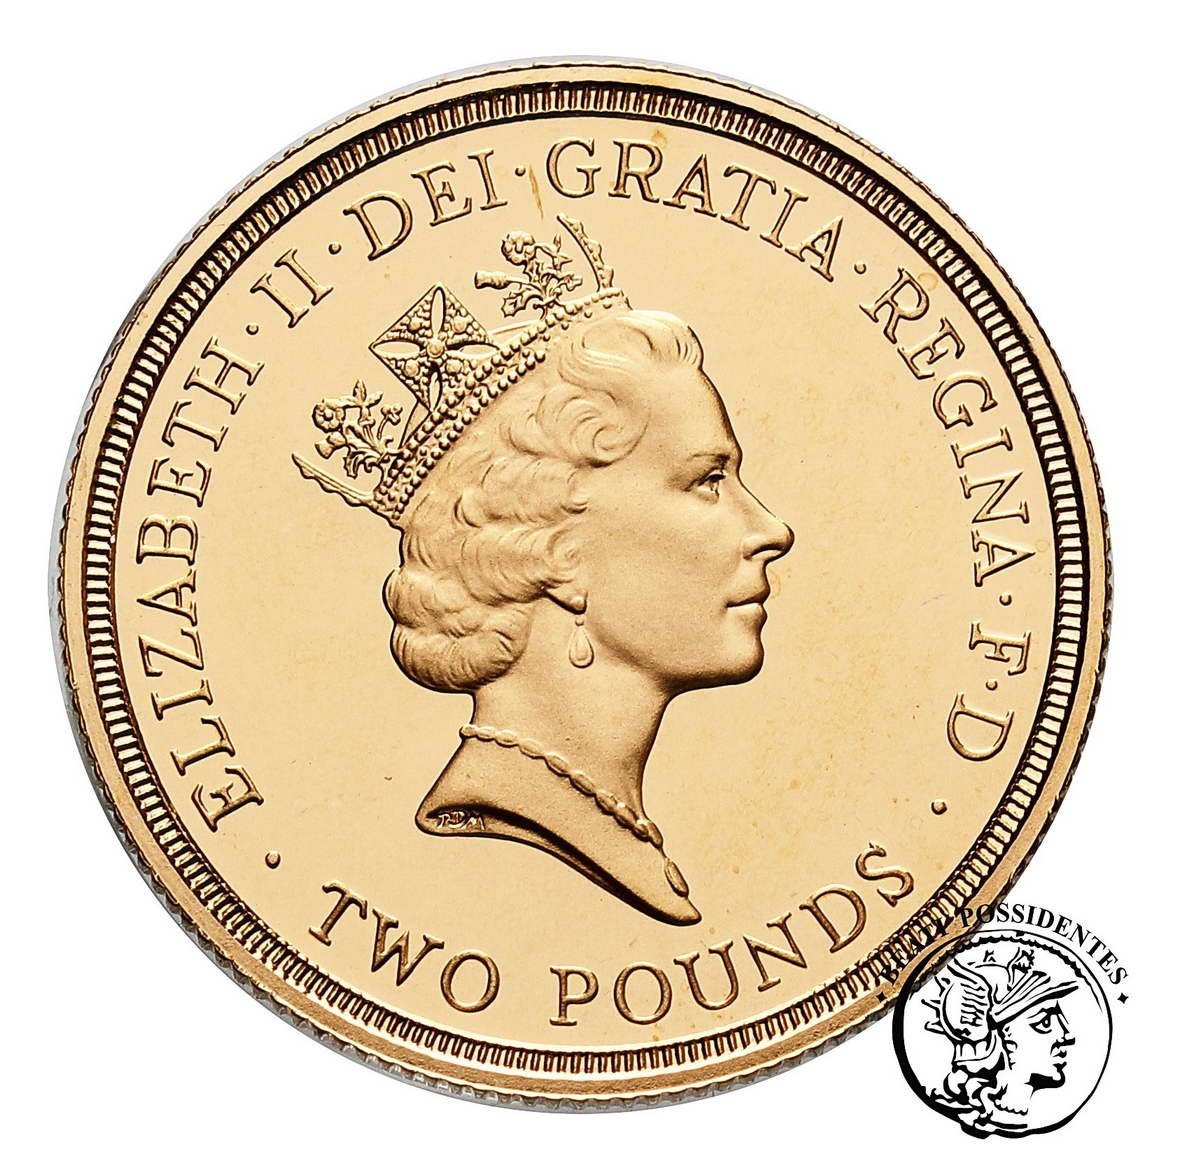 Wielka Brytania Elżbieta II 2 funty 1986 st. L stempel lustrzany